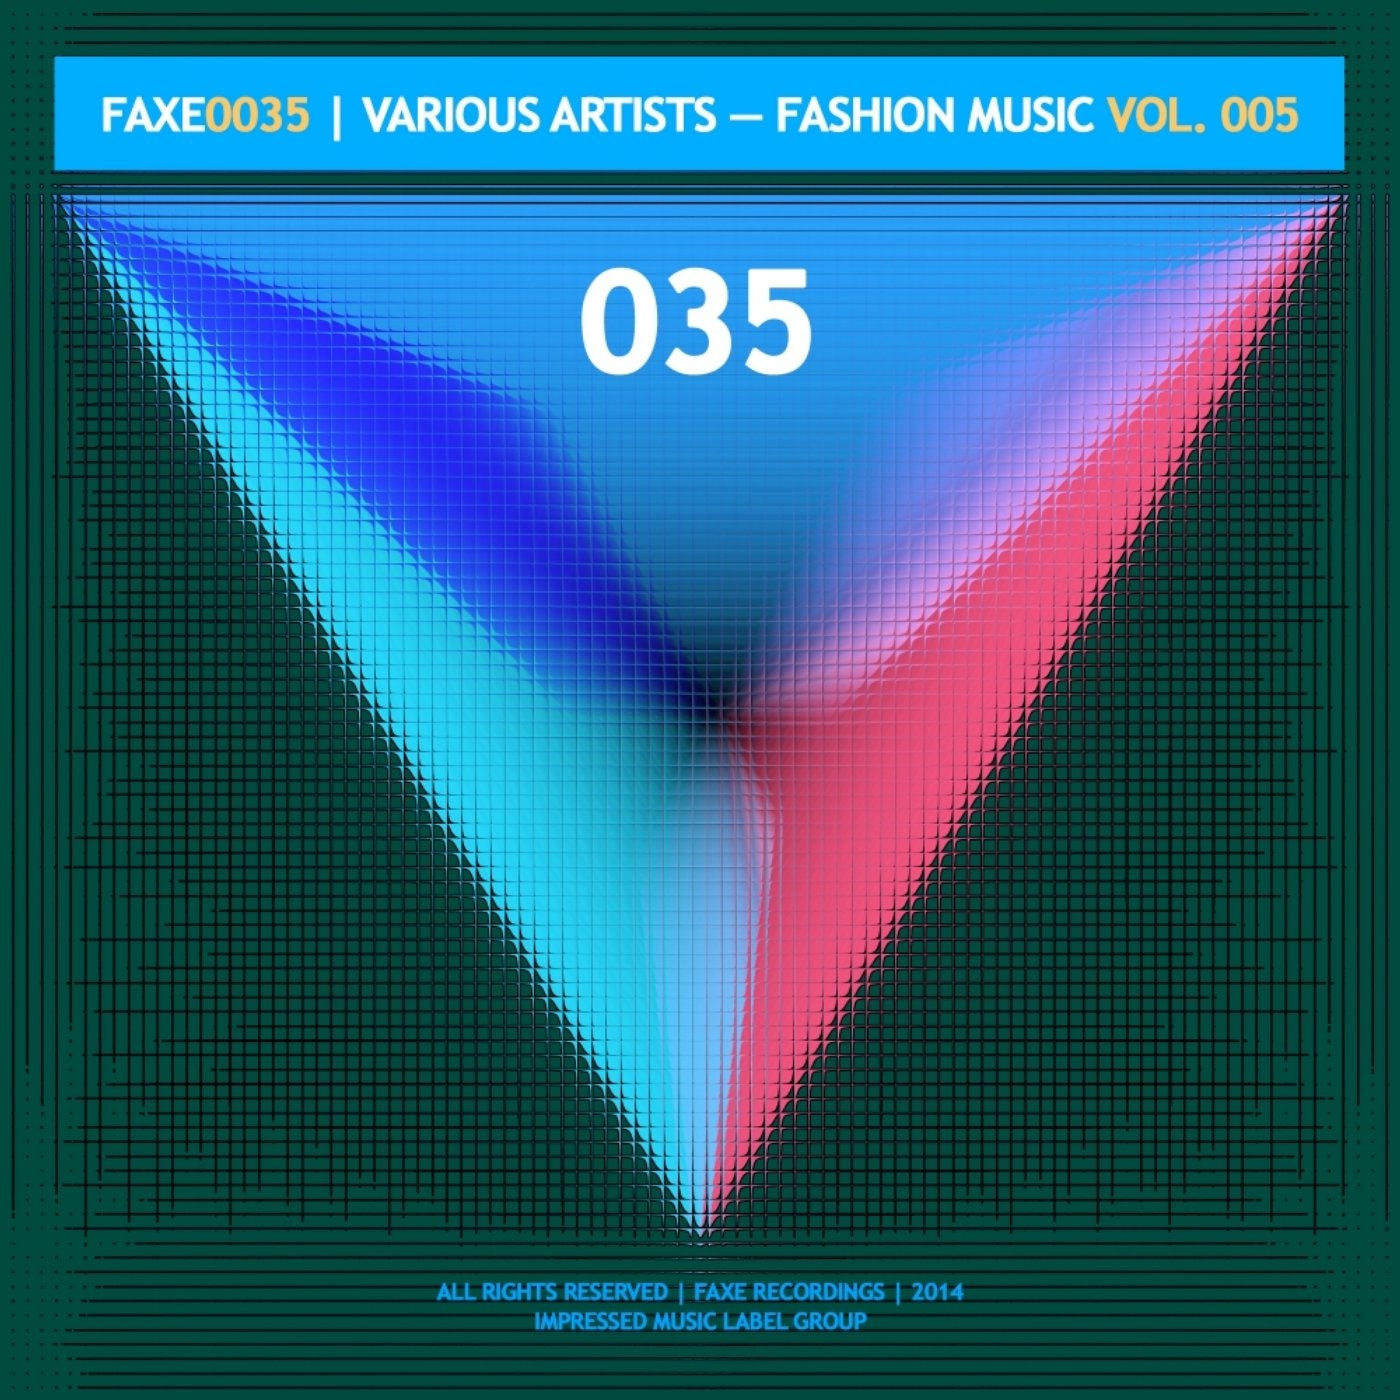 Fashion Music Vol. 005